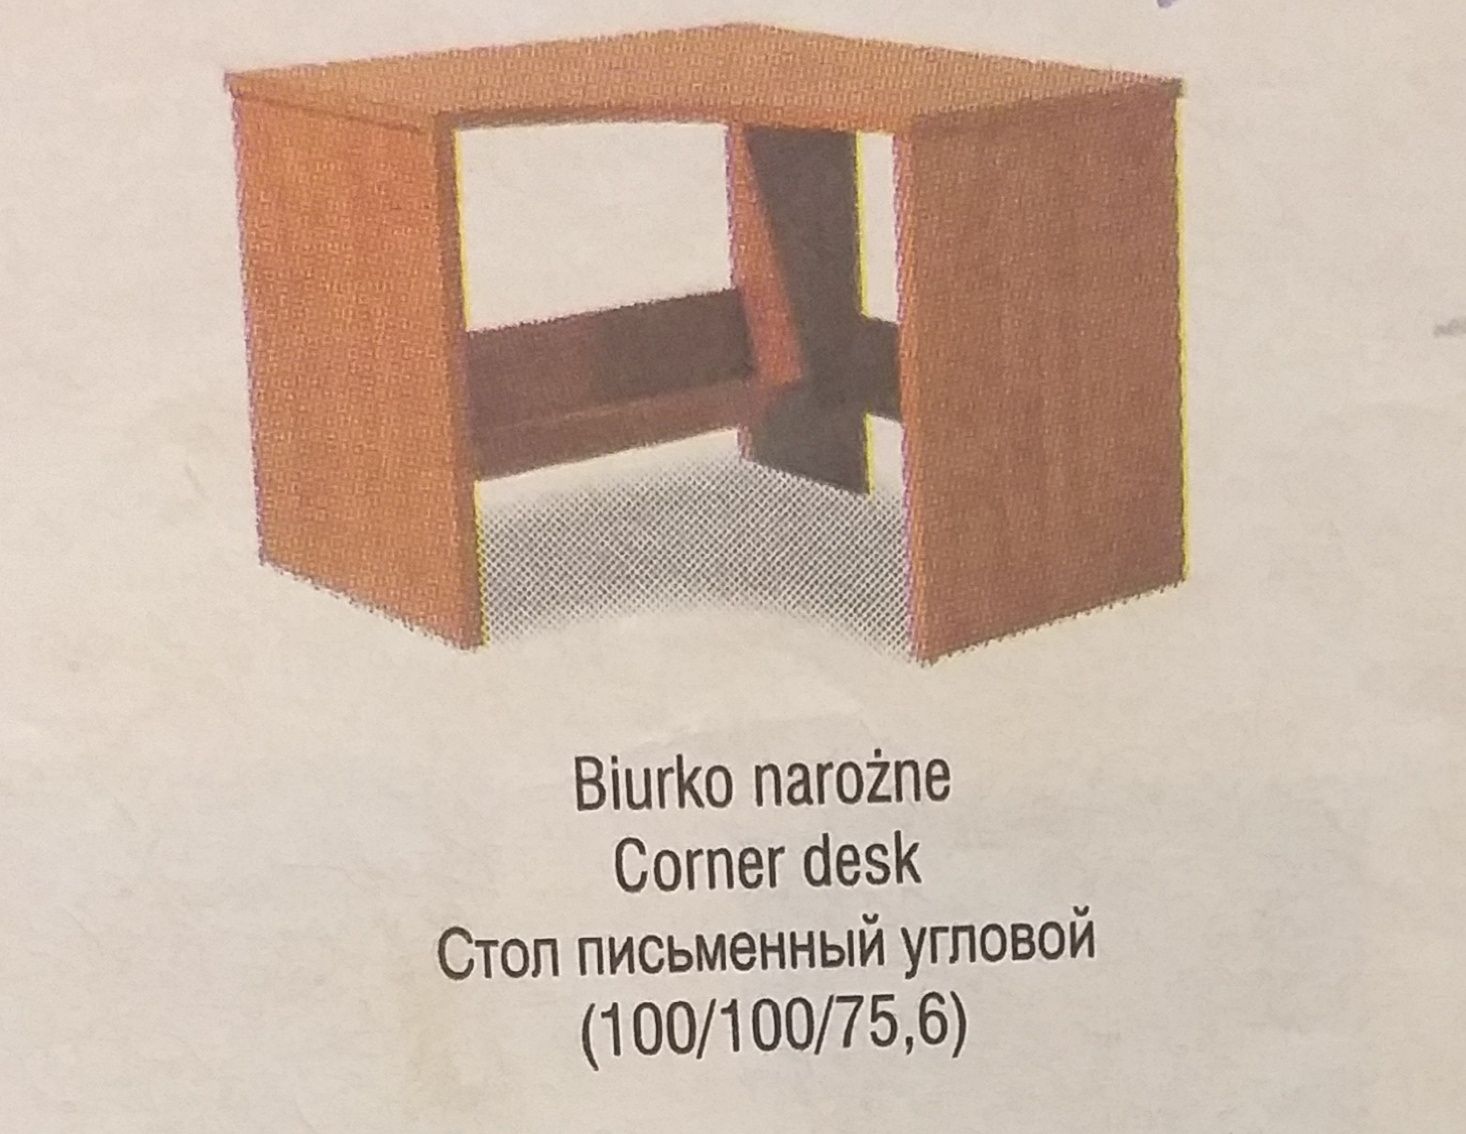 Мебель VOX коллекция Magellan ( компьютерный стол, книжные полки).